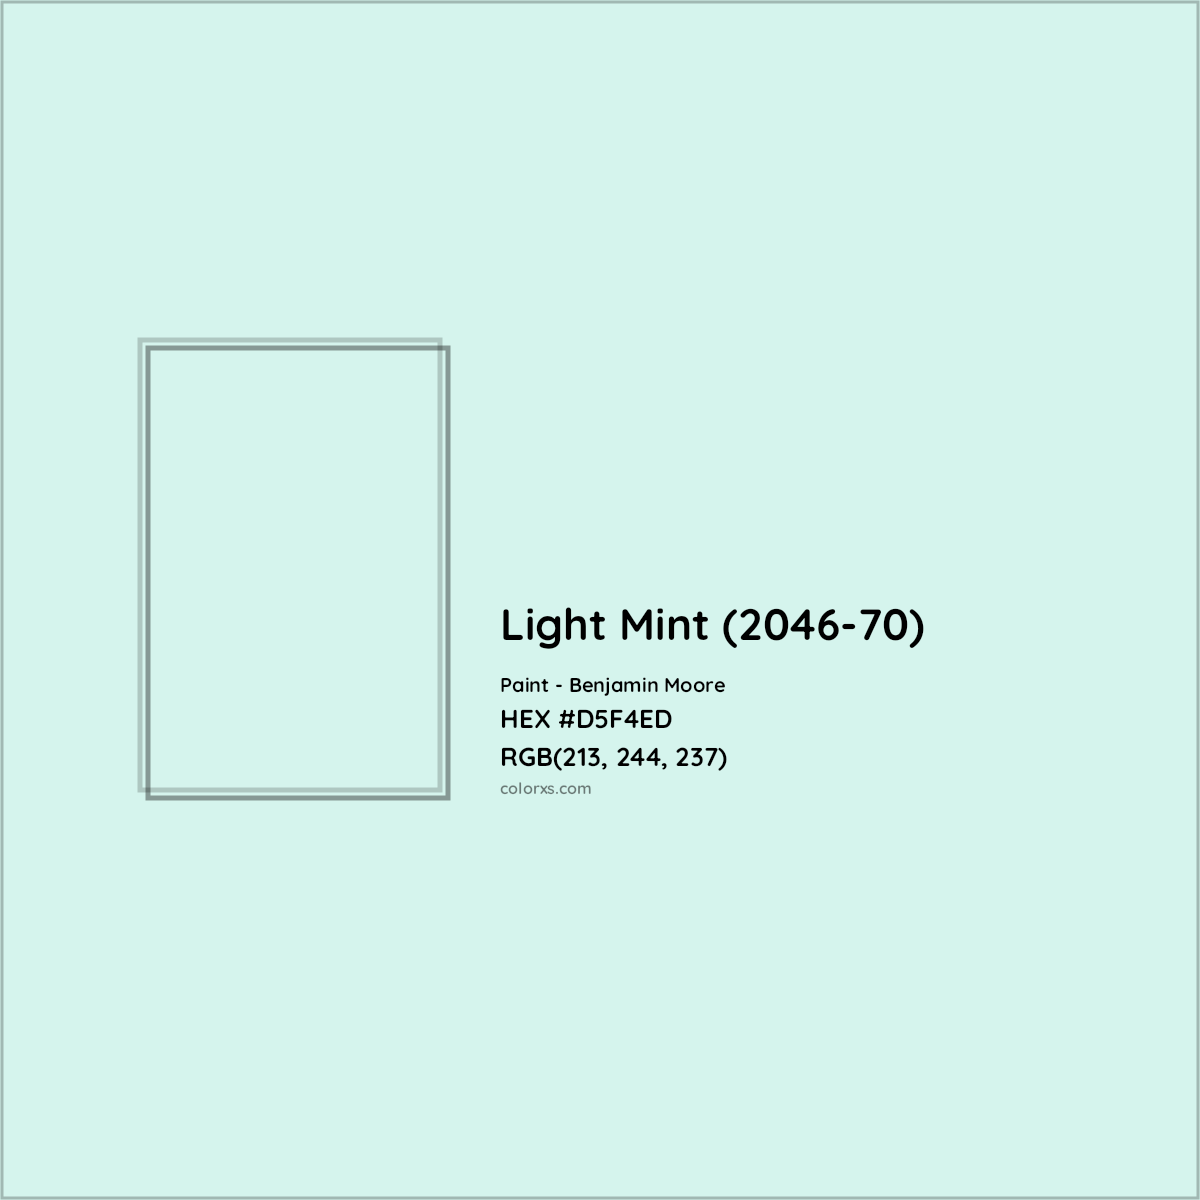 HEX #D5F4ED Light Mint (2046-70) Paint Benjamin Moore - Color Code